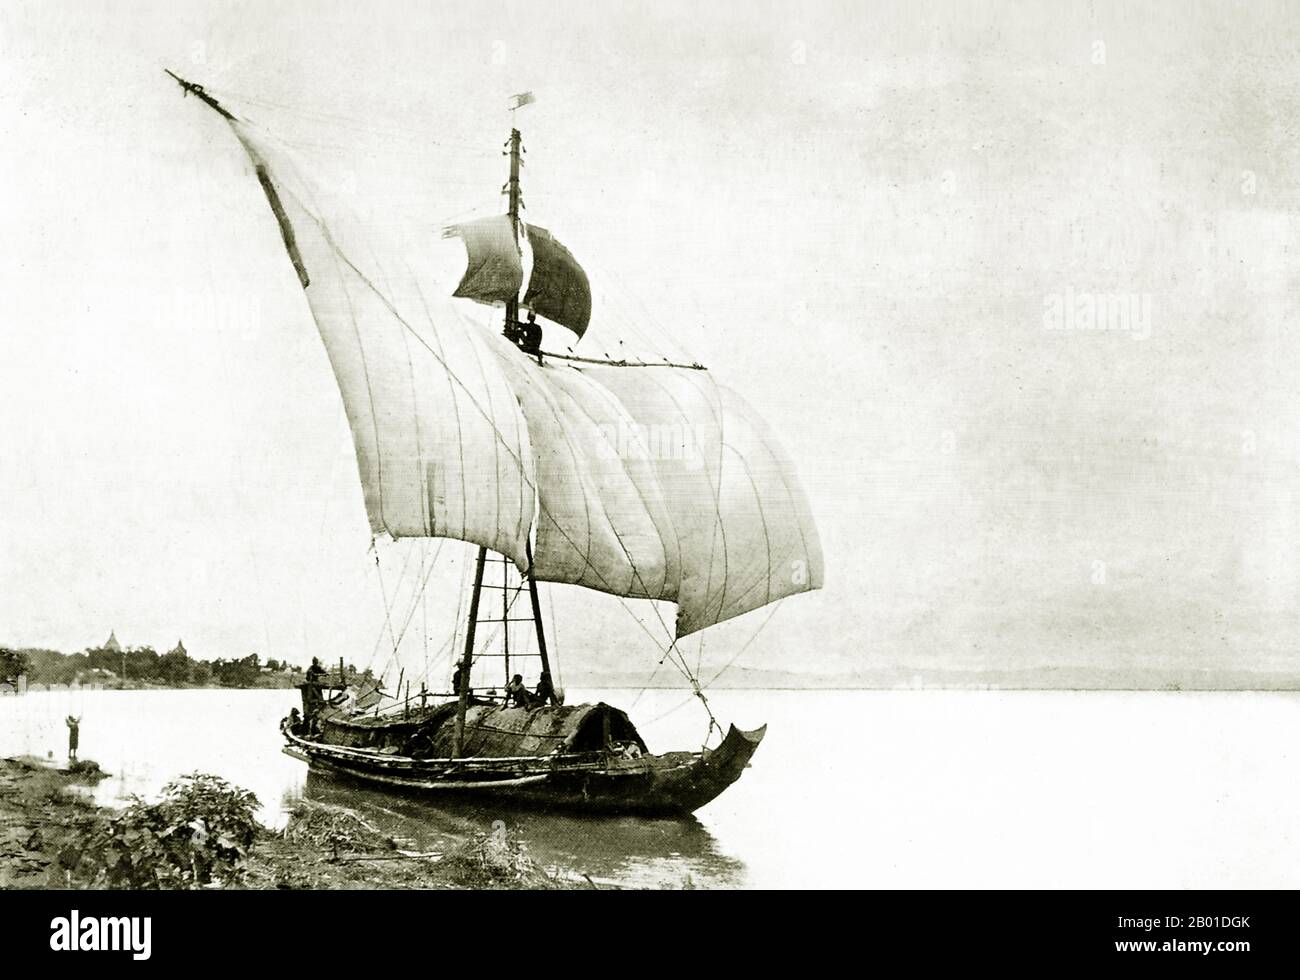 Birmanie : une barge navigue en amont sur la rivière Irrawaddy, vers 1892-1896. La conquête britannique de la Birmanie a commencé en 1824 en réponse à une tentative birmane d'envahir l'Inde. En 1886, et après deux autres guerres, la Grande-Bretagne avait incorporé tout le pays dans le Raj britannique. Pour stimuler le commerce et faciliter les changements, les Britanniques ont fait venir des Indiens et des Chinois, qui ont rapidement déplacé les Birmans dans les zones urbaines. À ce jour, Rangoon et Mandalay ont de grandes populations indiennes ethniques. Des chemins de fer et des écoles ont été construits, ainsi qu'un grand nombre de prisons, dont la tristement célèbre prison d'Insein. Banque D'Images